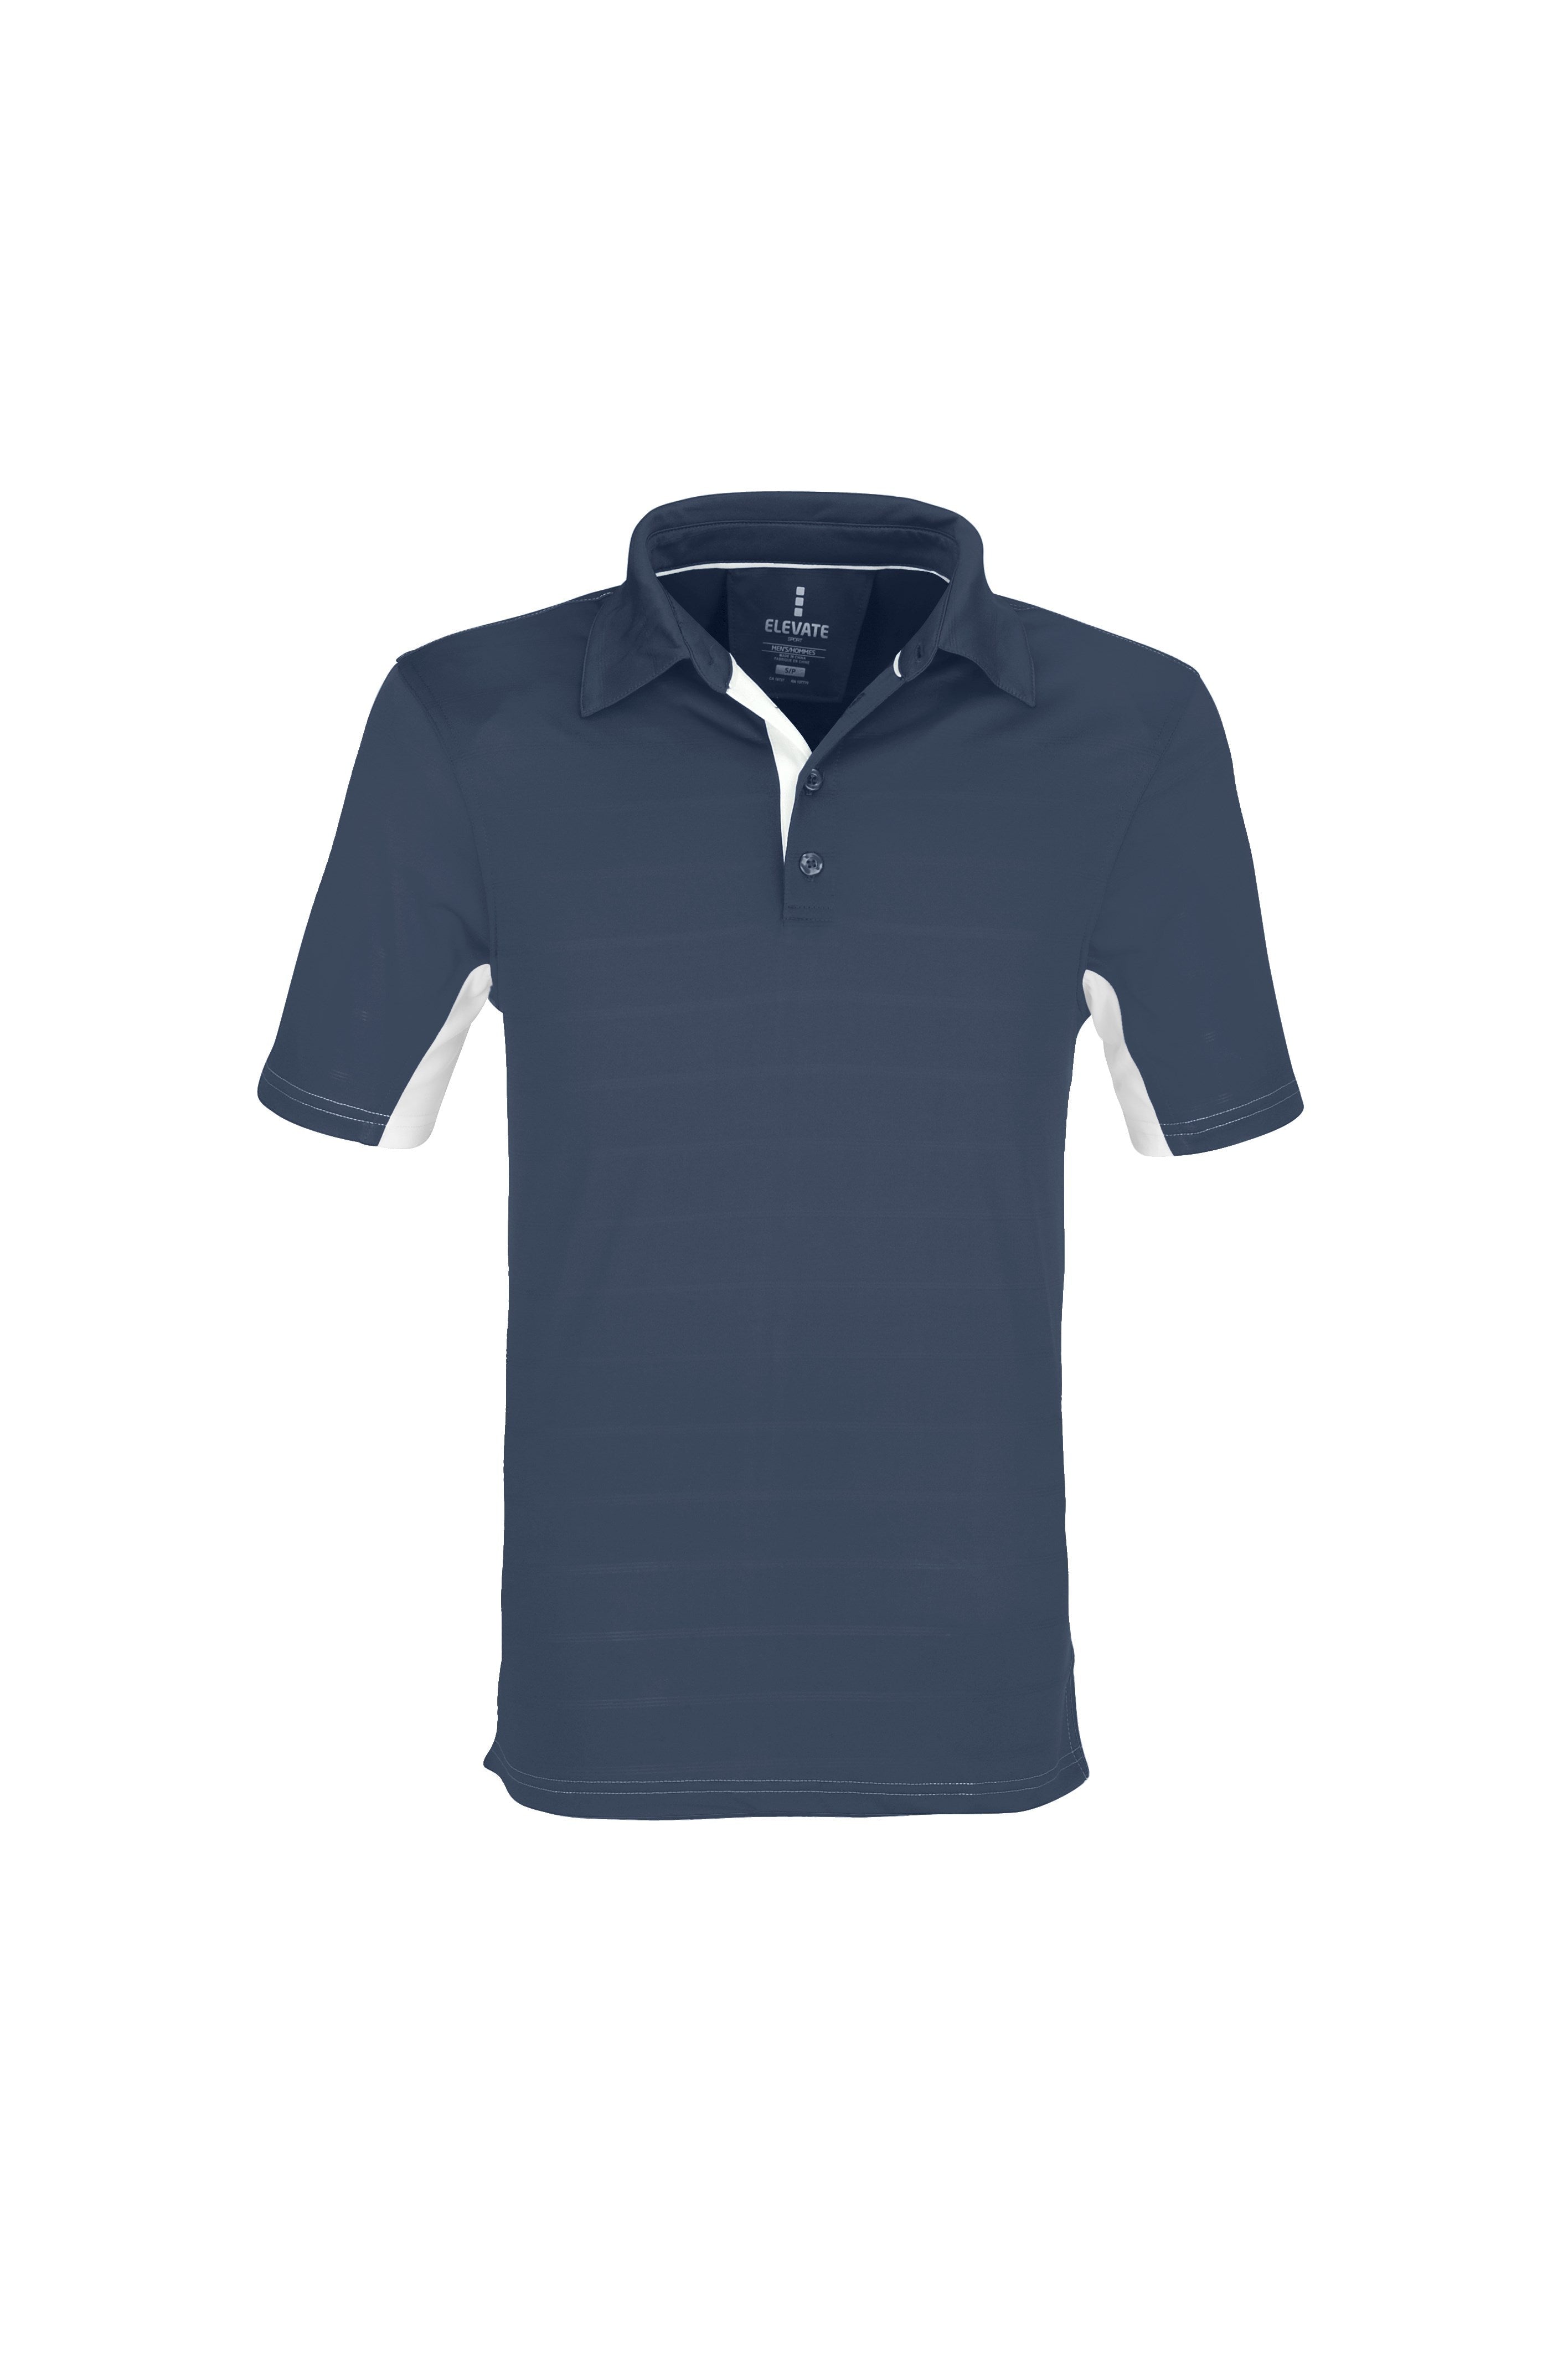 Mens Prescott Golf Shirt - Blue Only-2XL-Blue-BU